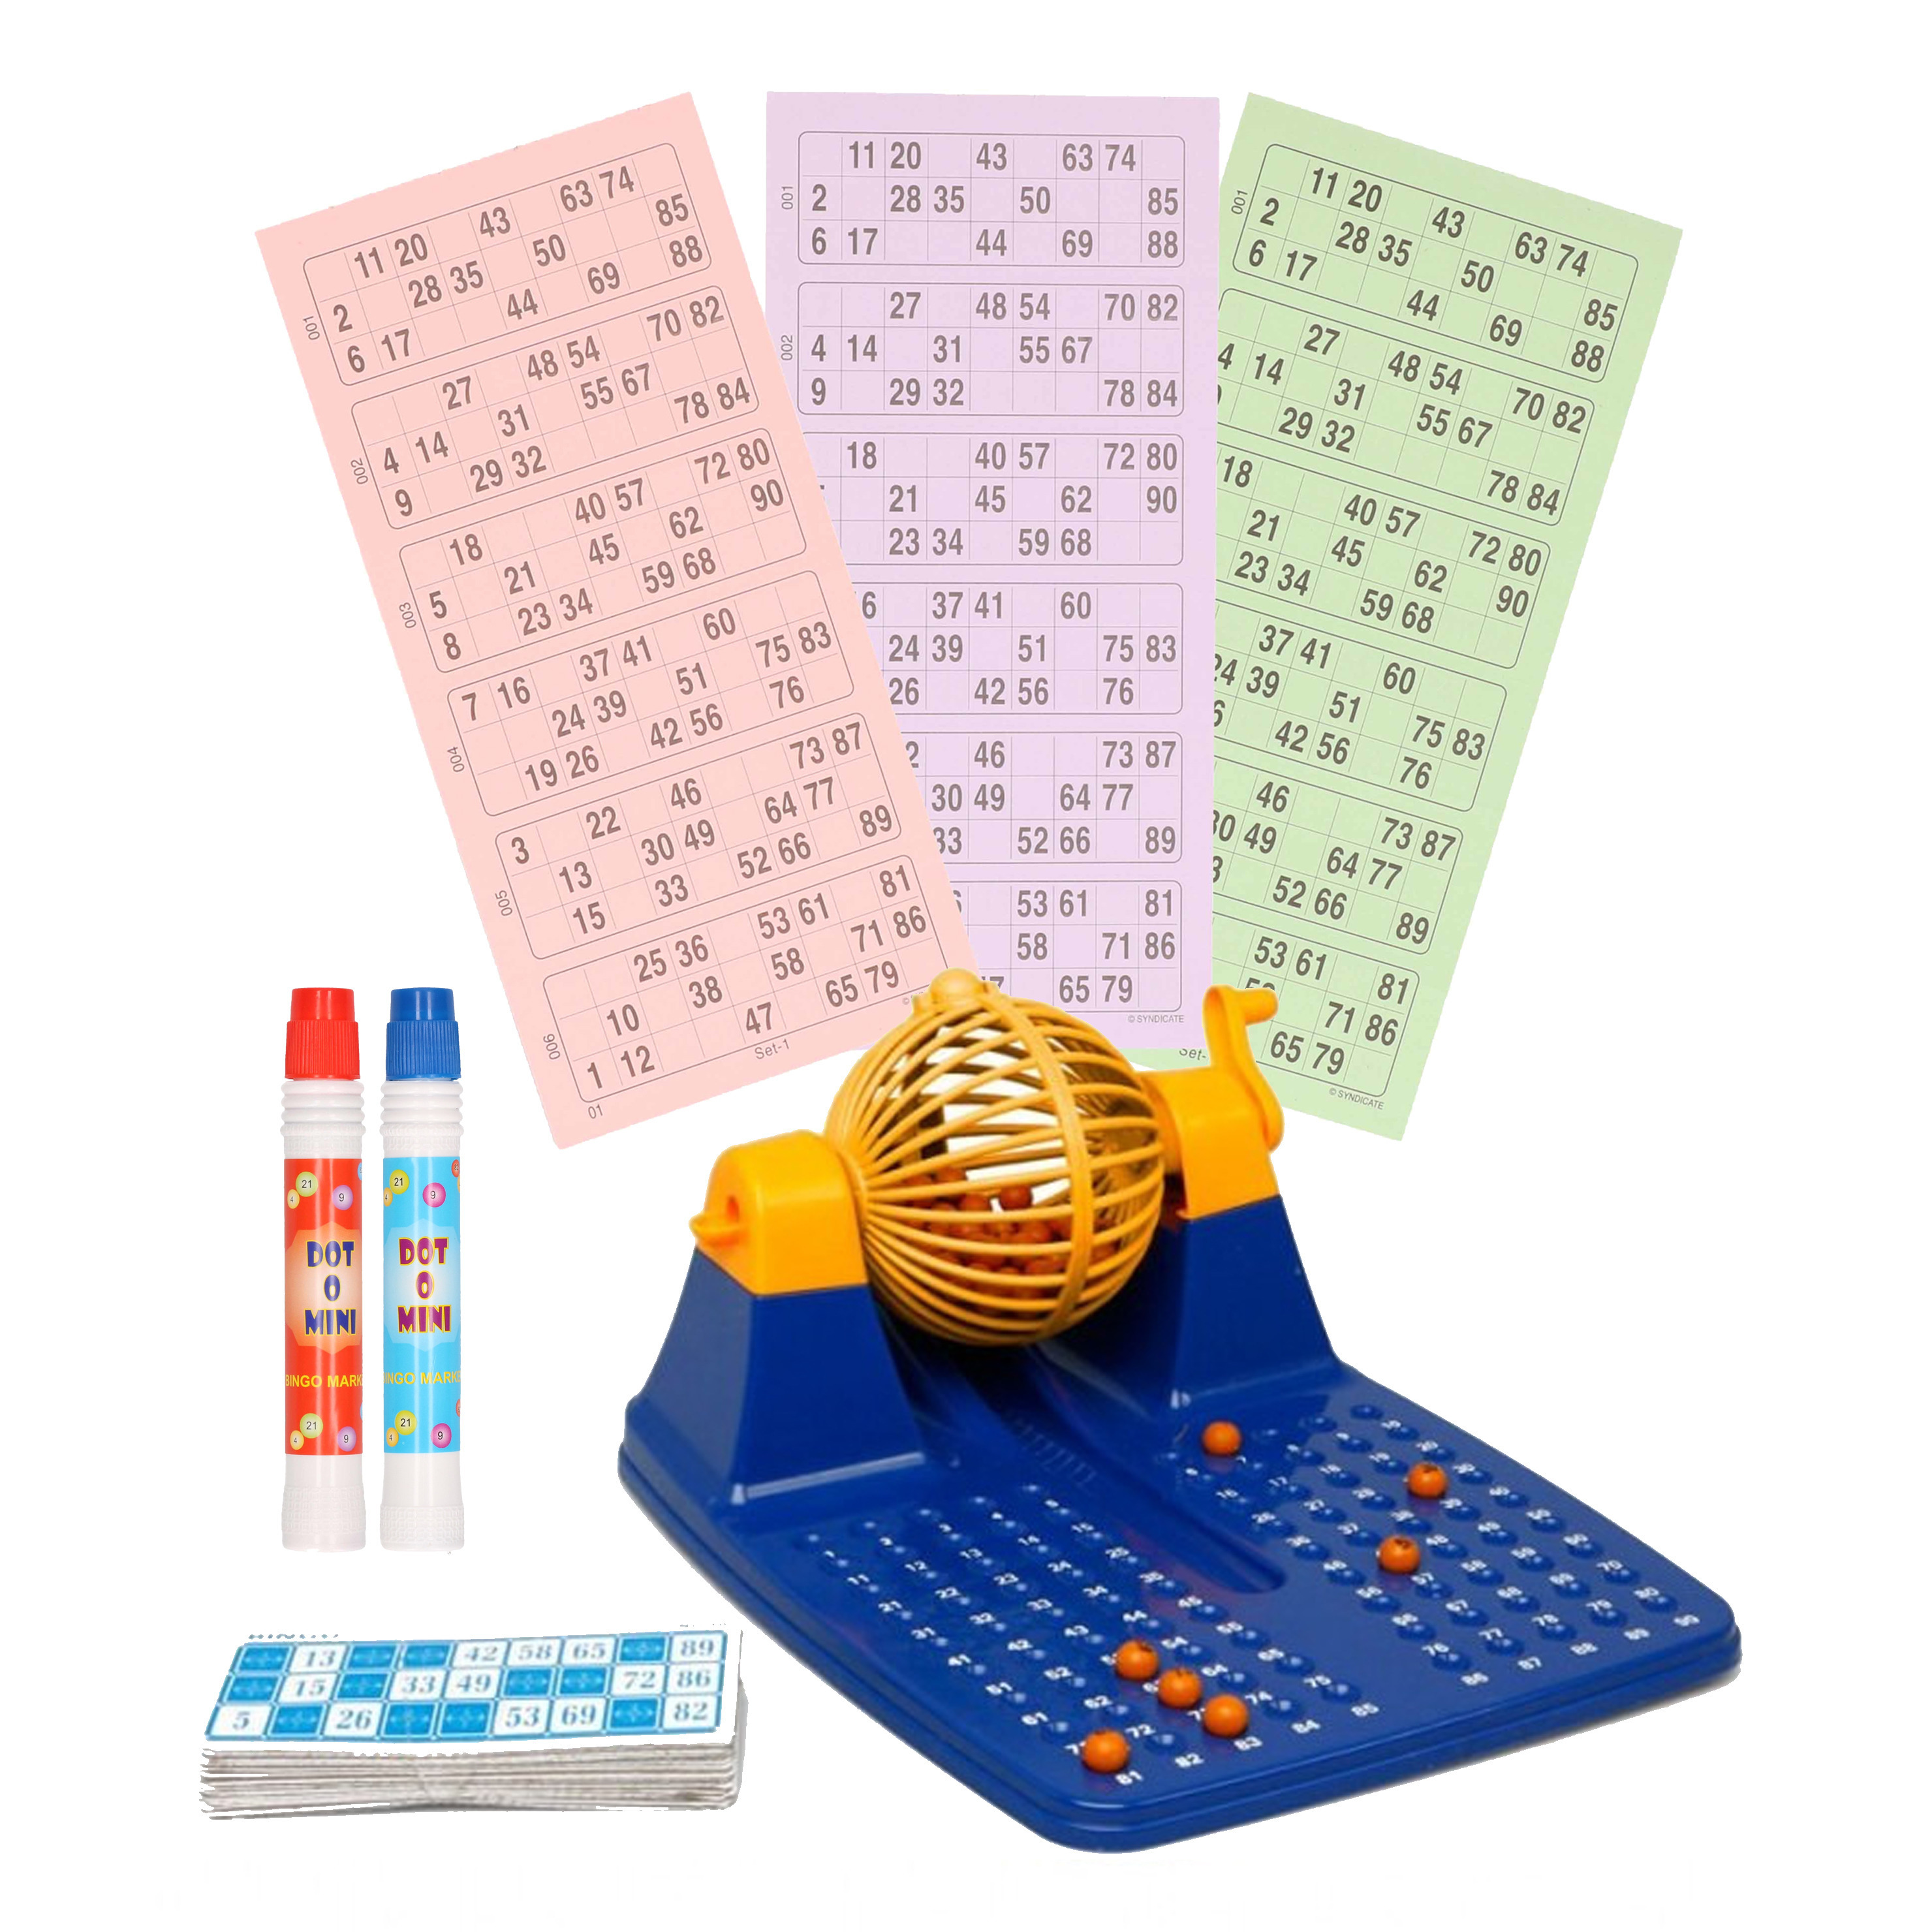 Bingo spel blauw/geel/oranje complete set nummers 1-90 met molen/148x bingokaarten/2x stiften